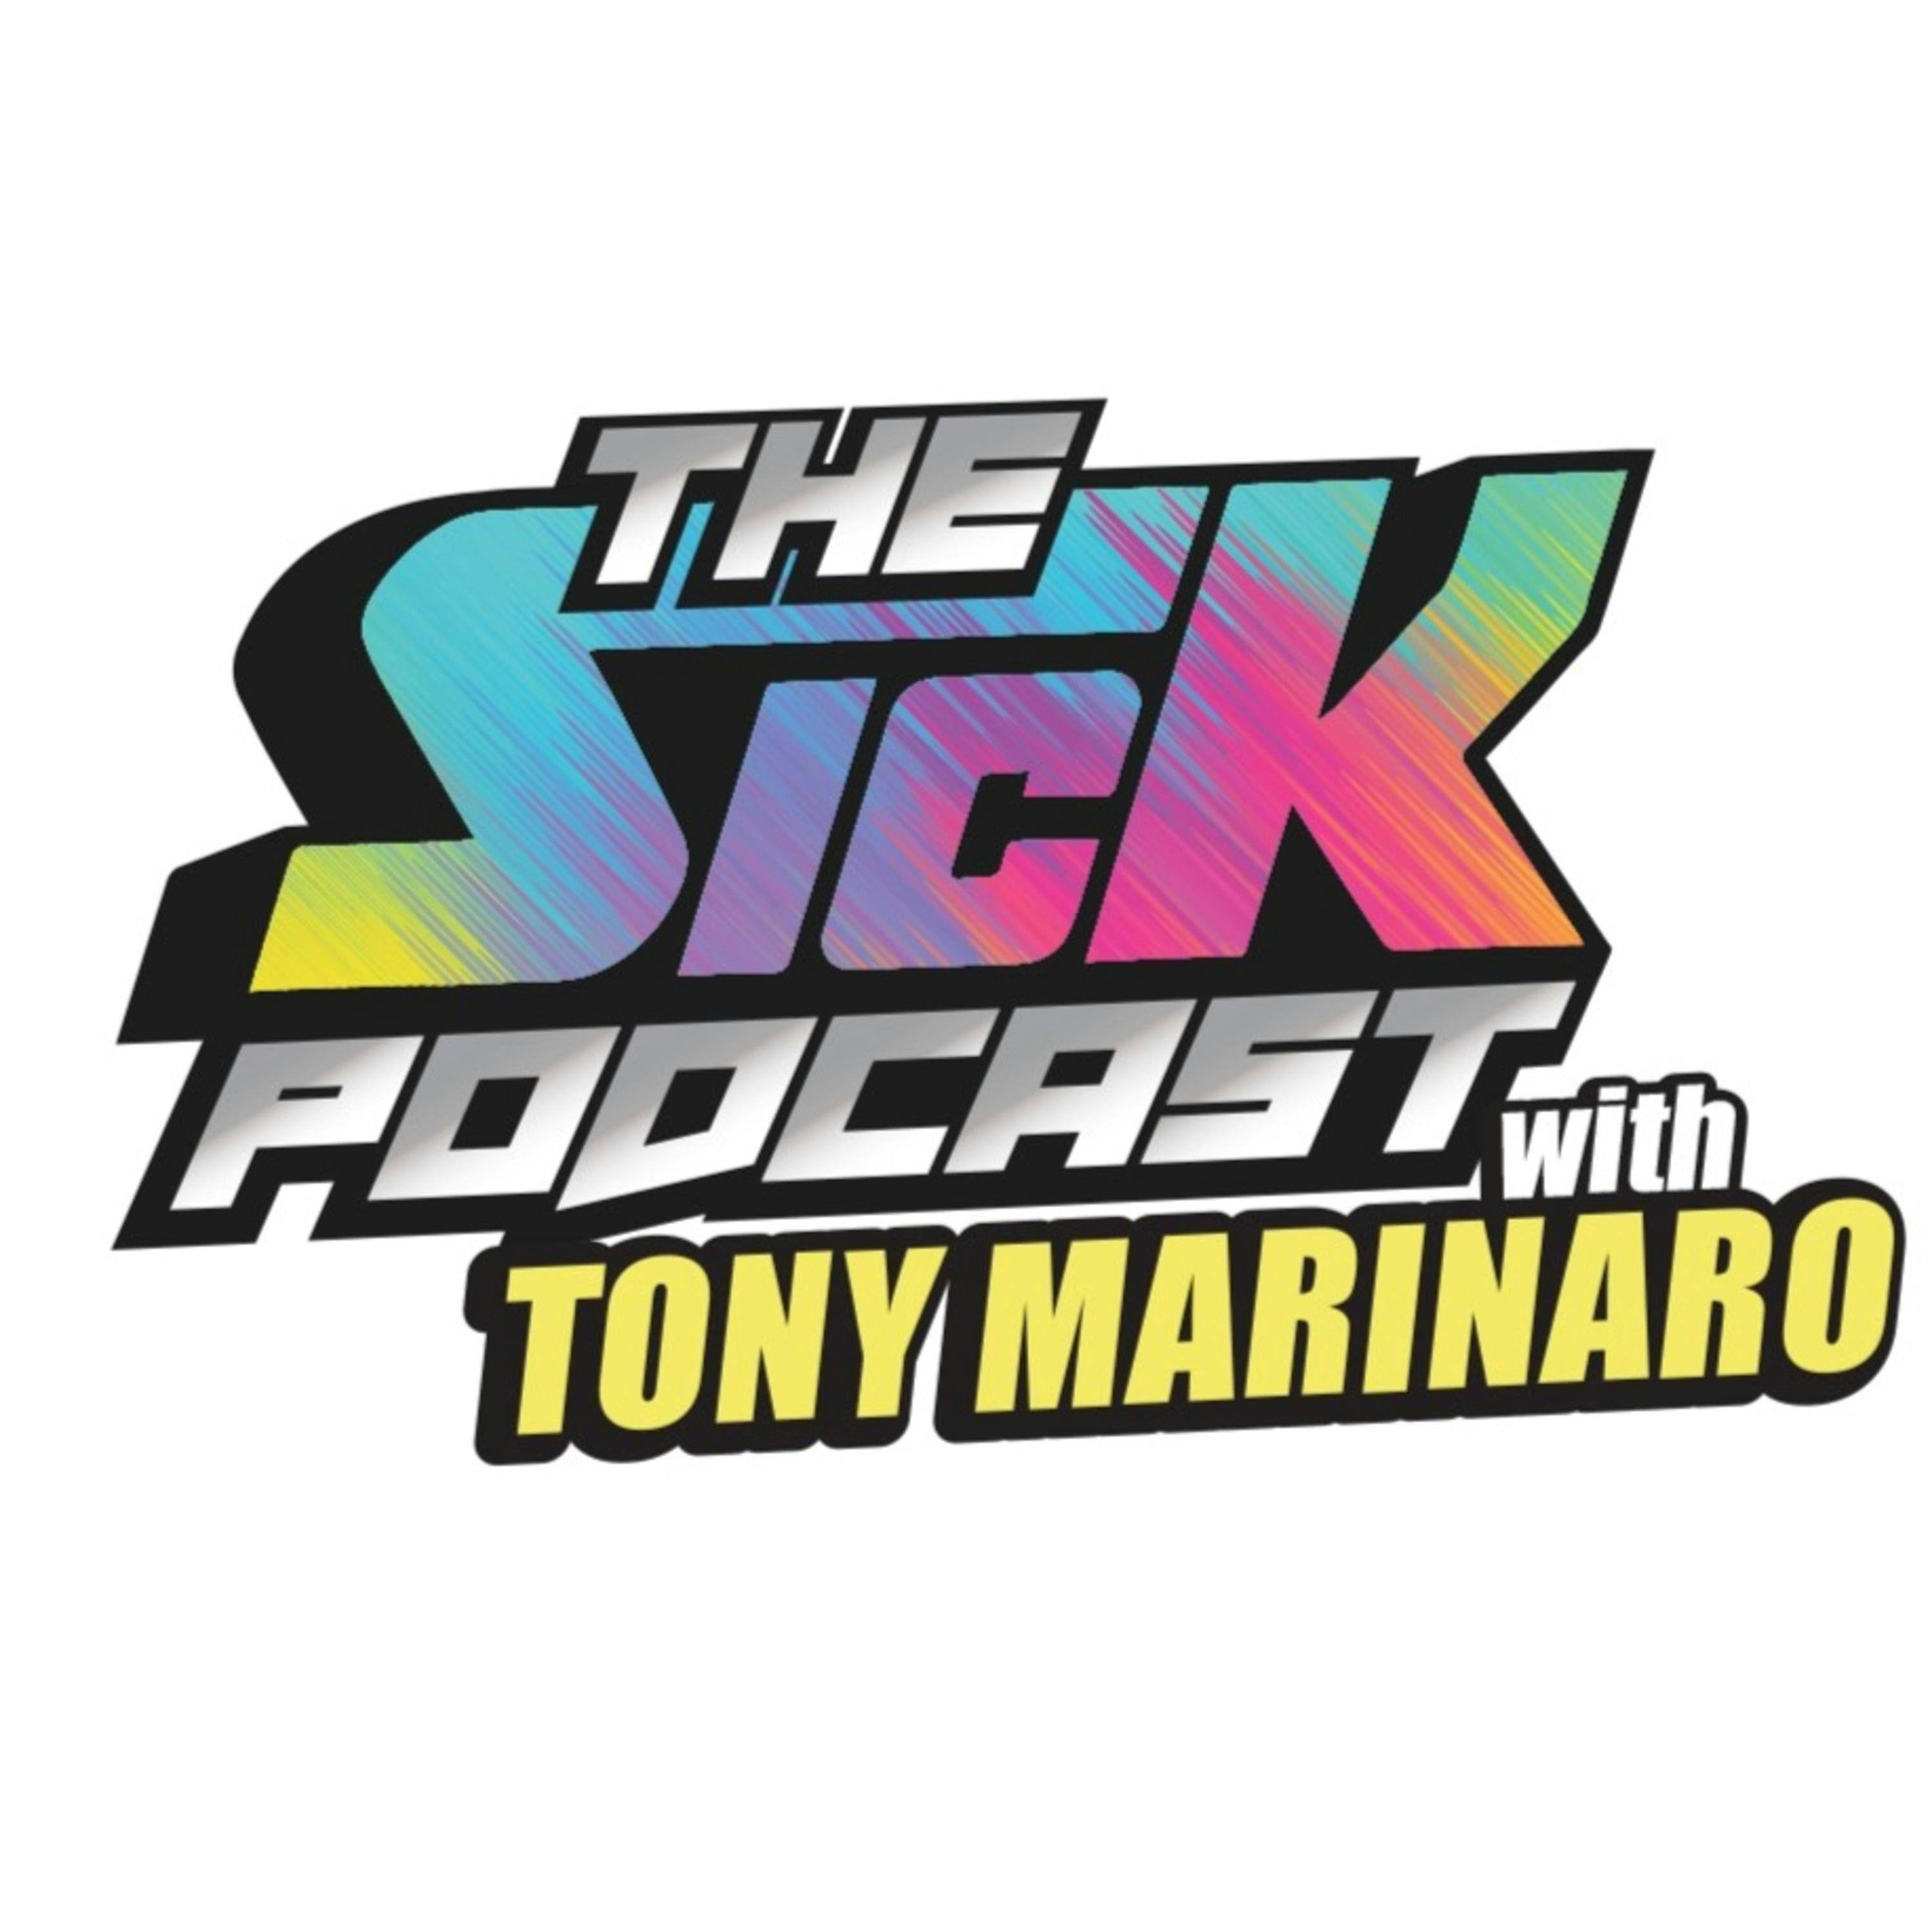 Tony Marinaro: I Would Trade Josh Anderson | The Sick Podcast with Tony Marinaro February 27 2023